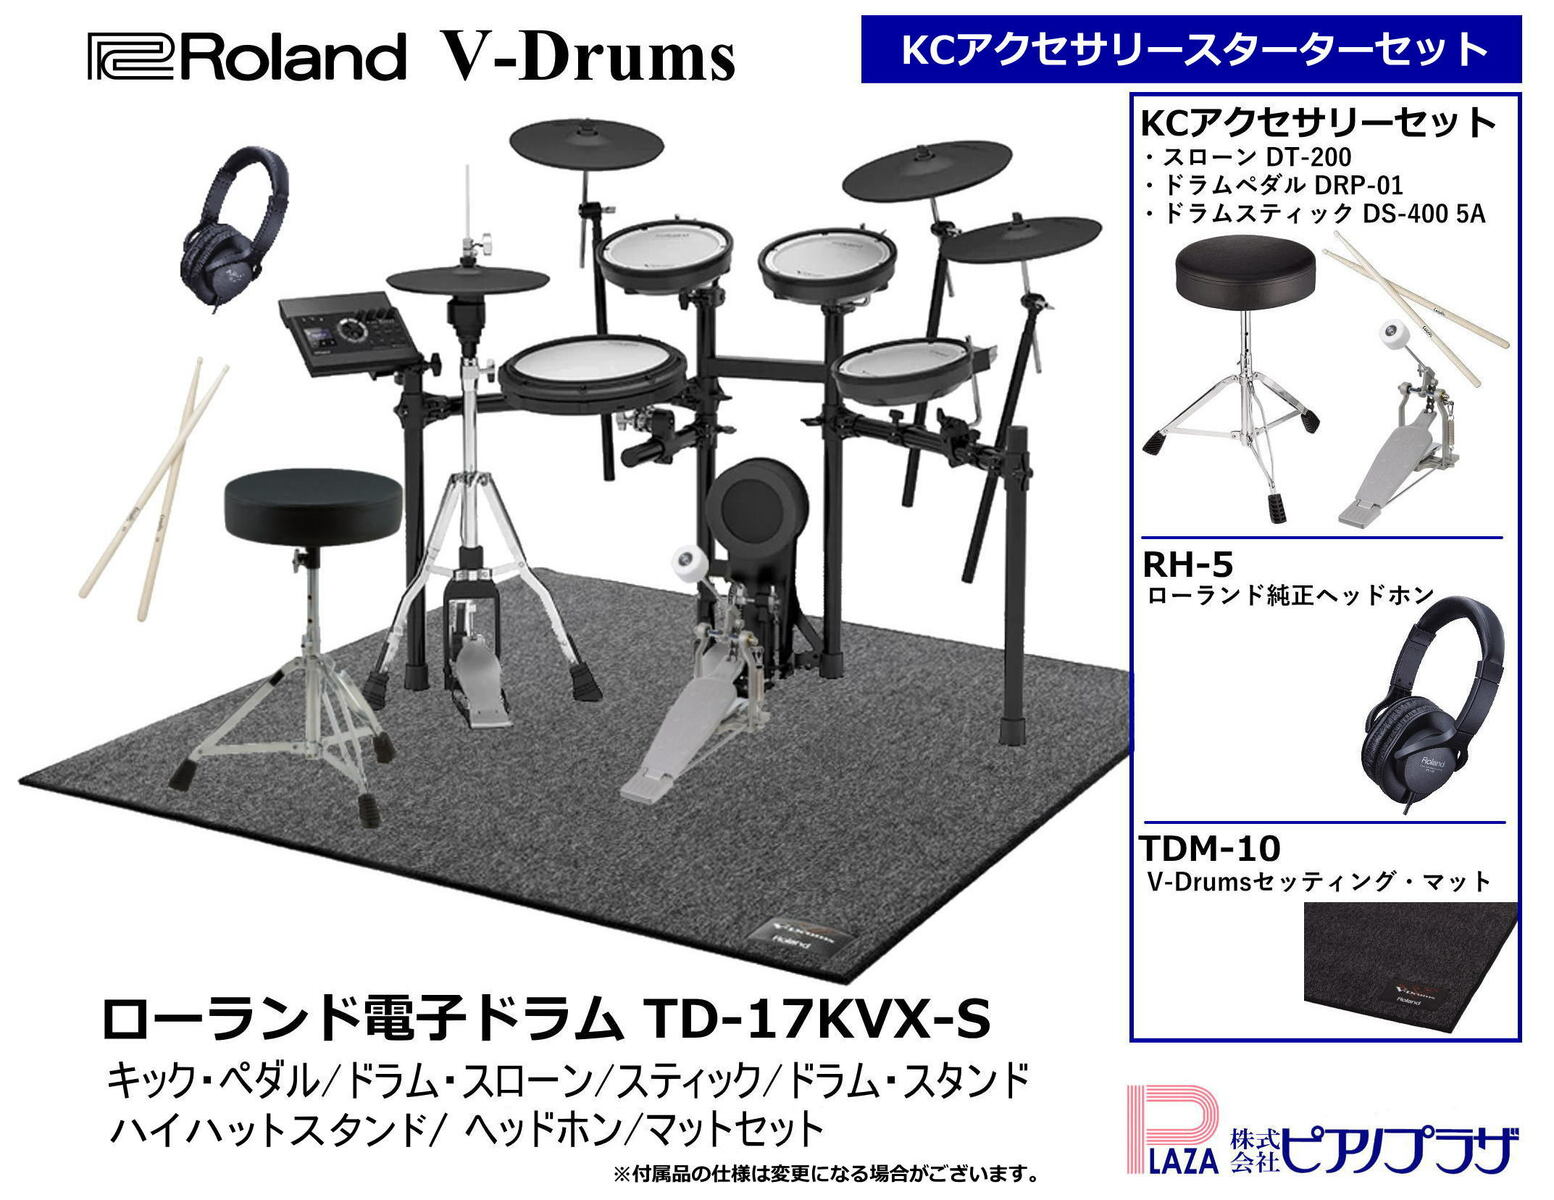 超人気新品 Roland V-Drums TD-17KVX-S 電子ドラム KCフルオプション